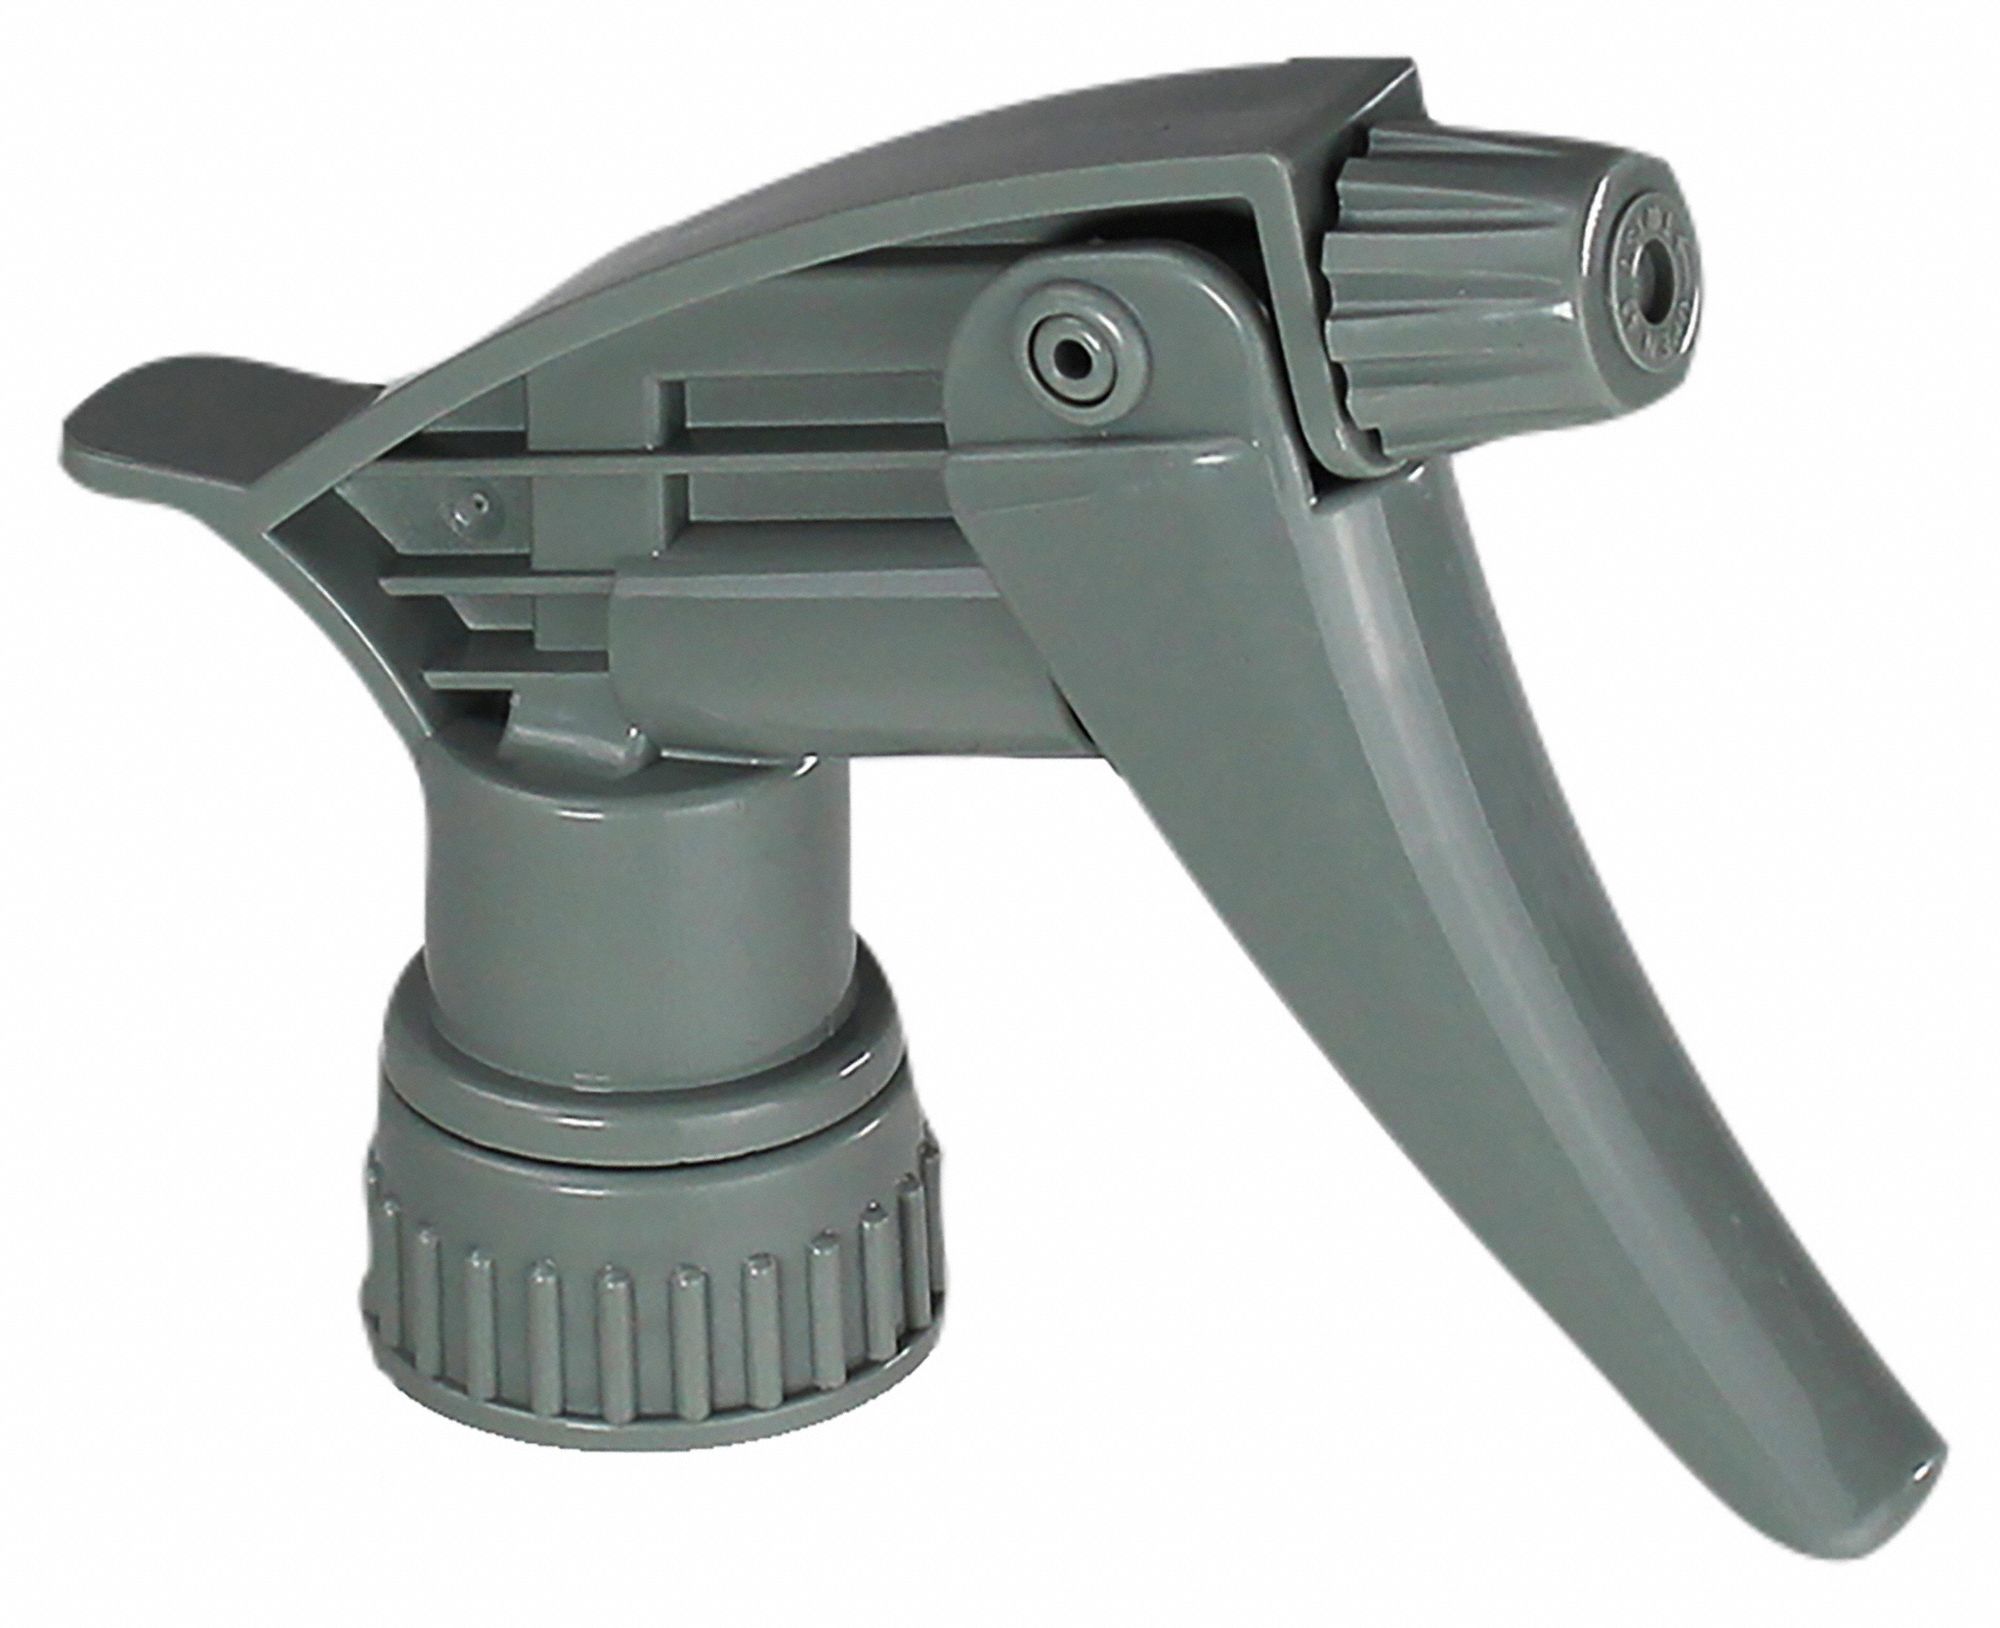 Grainger White/Green HDPE Trigger Spray Bottle, 32 oz, 3 PK